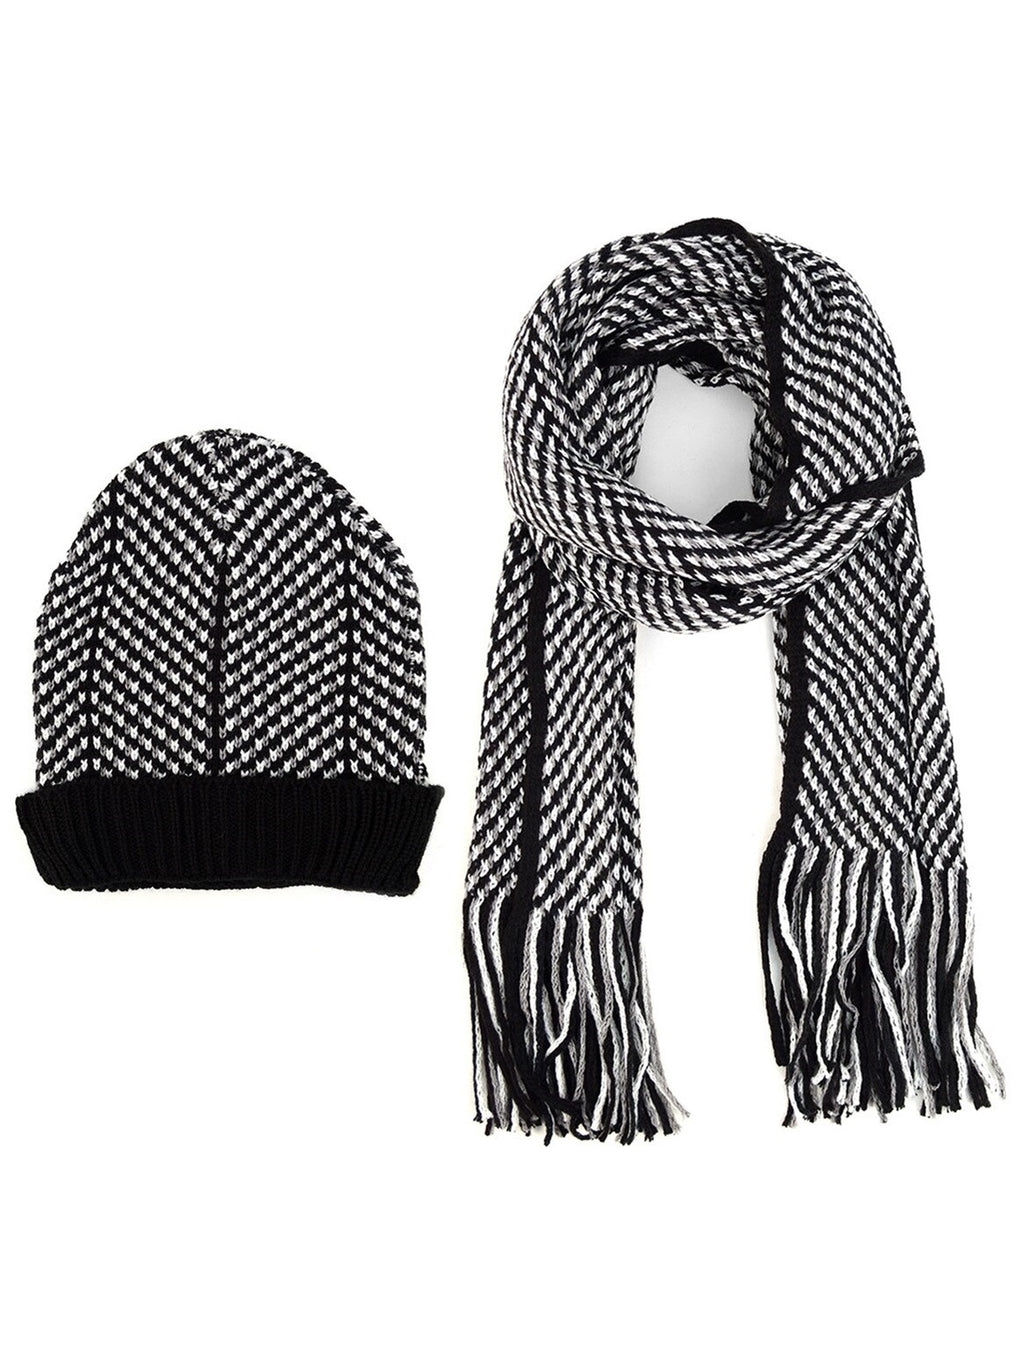 Men's Black, Grey & White Acrylic Knit Scarf and Hat Set Winter Set Umo Lorenzo Black One Size 